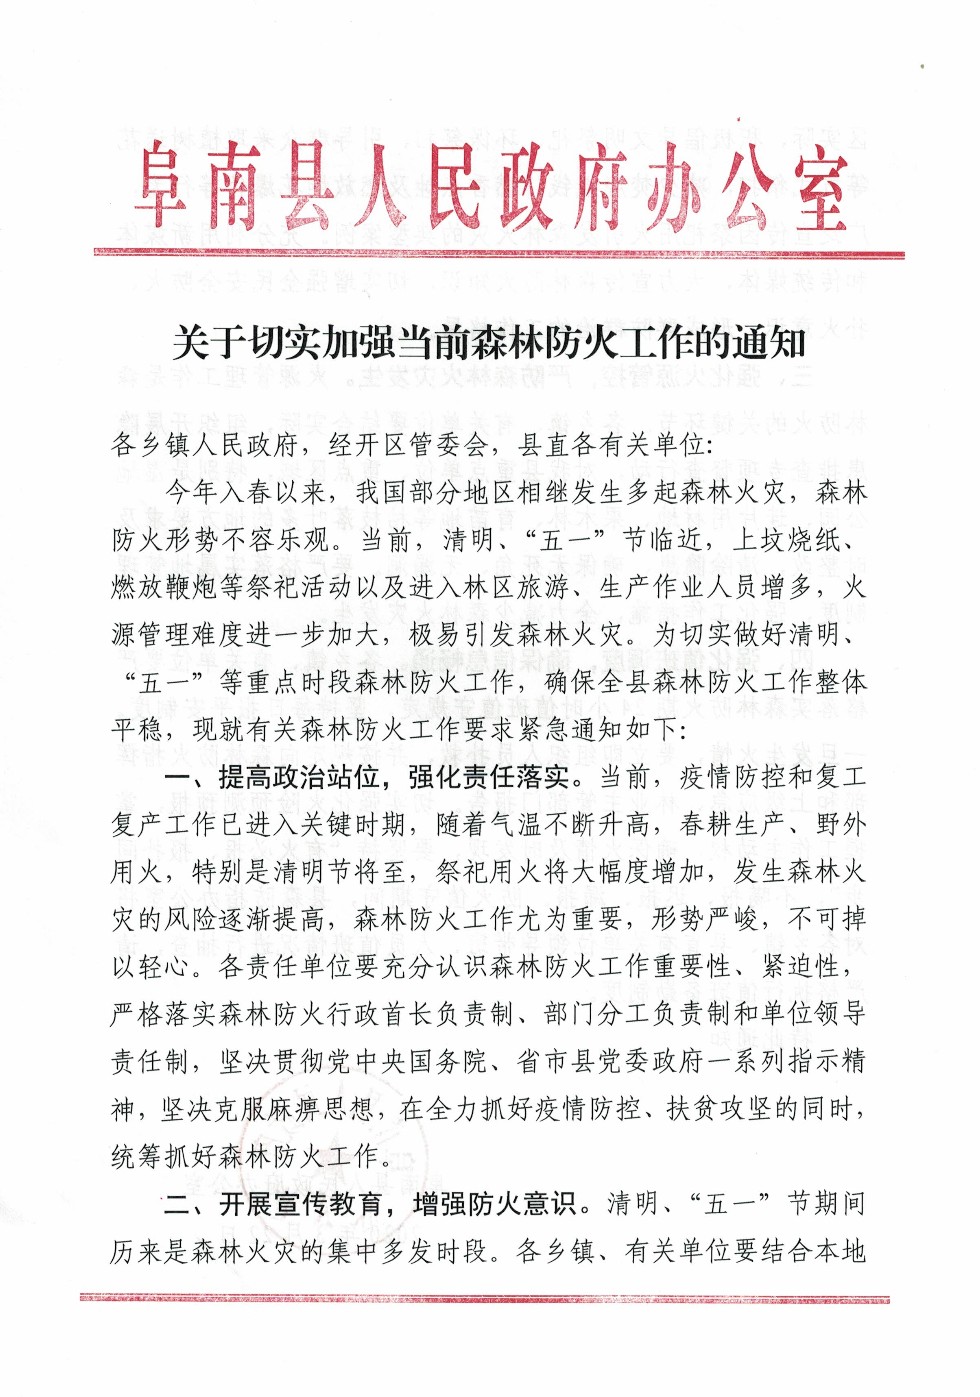 阜南县人民政府办公室《关于切实加强当前森林防火工作的通知》